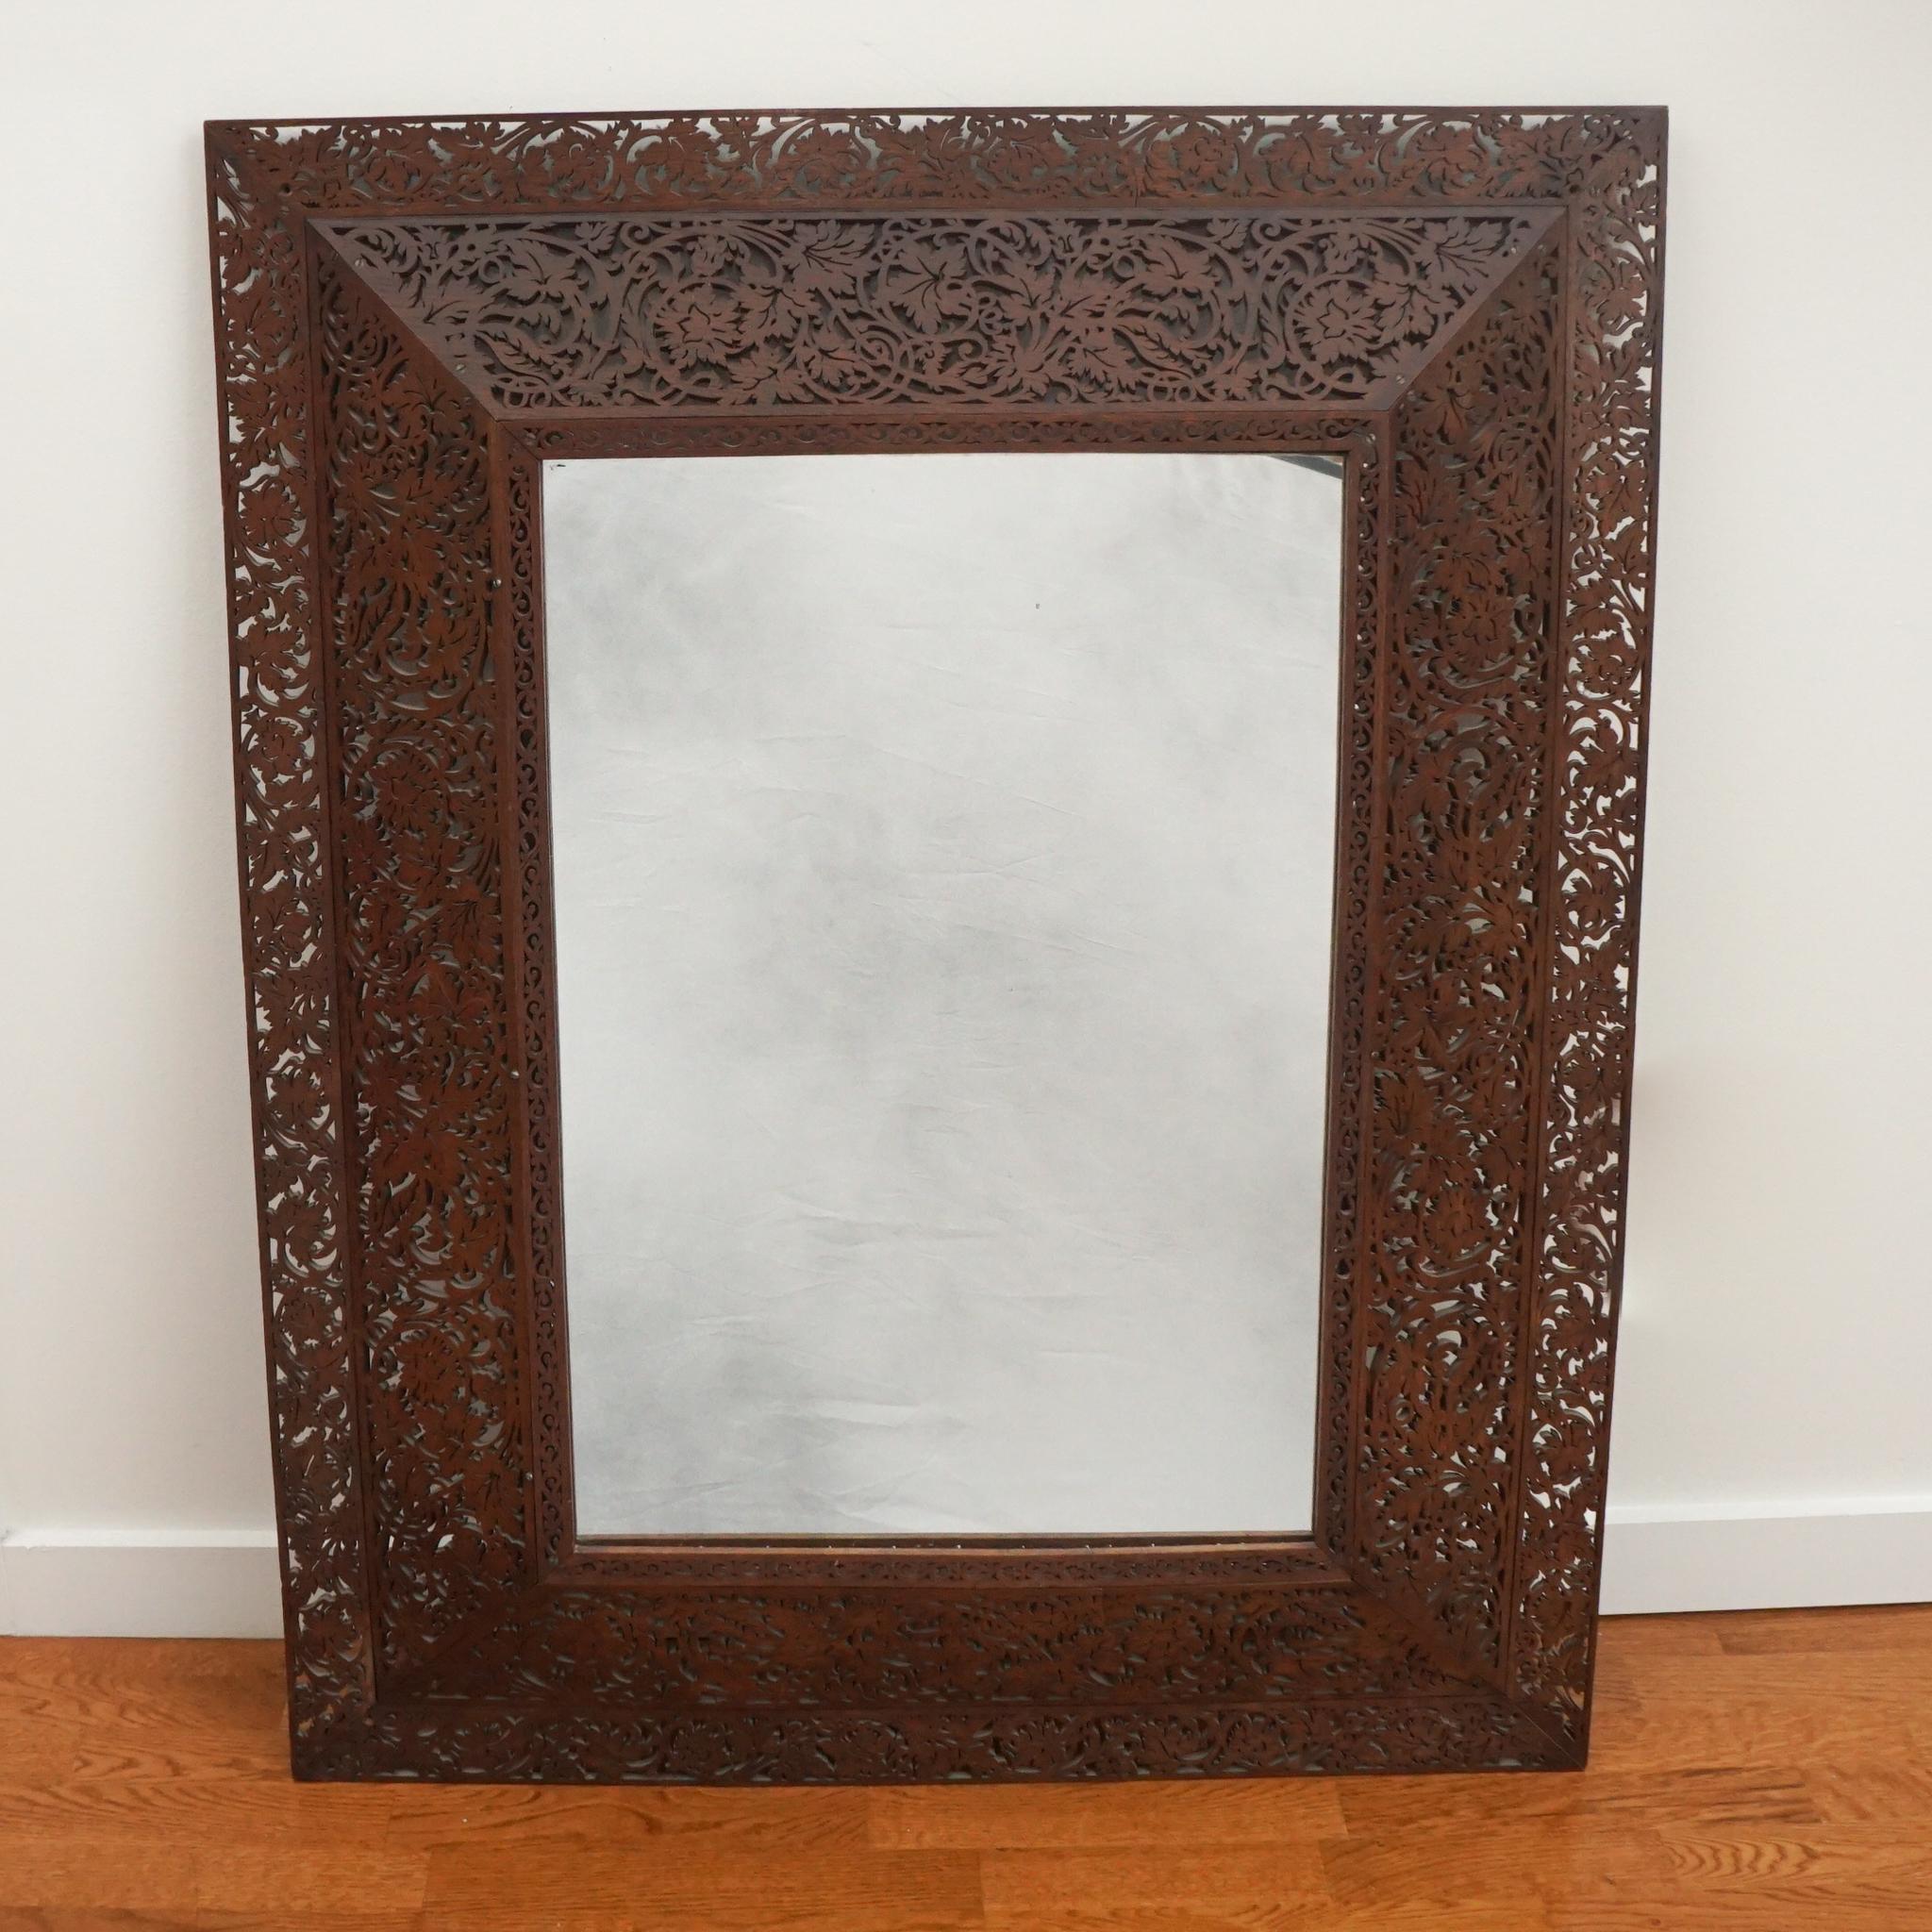 Der hier gezeigte exquisite Spiegel mit geschnitztem Holzrahmen stammt aus Frankreich, um 1890. Der kunstvoll geschnitzte Holzrahmen und das Blattwerk des Spiegels sind exquisit.  Der Rahmen besteht aus vier verschiedenen Teilen, die um den Spiegel